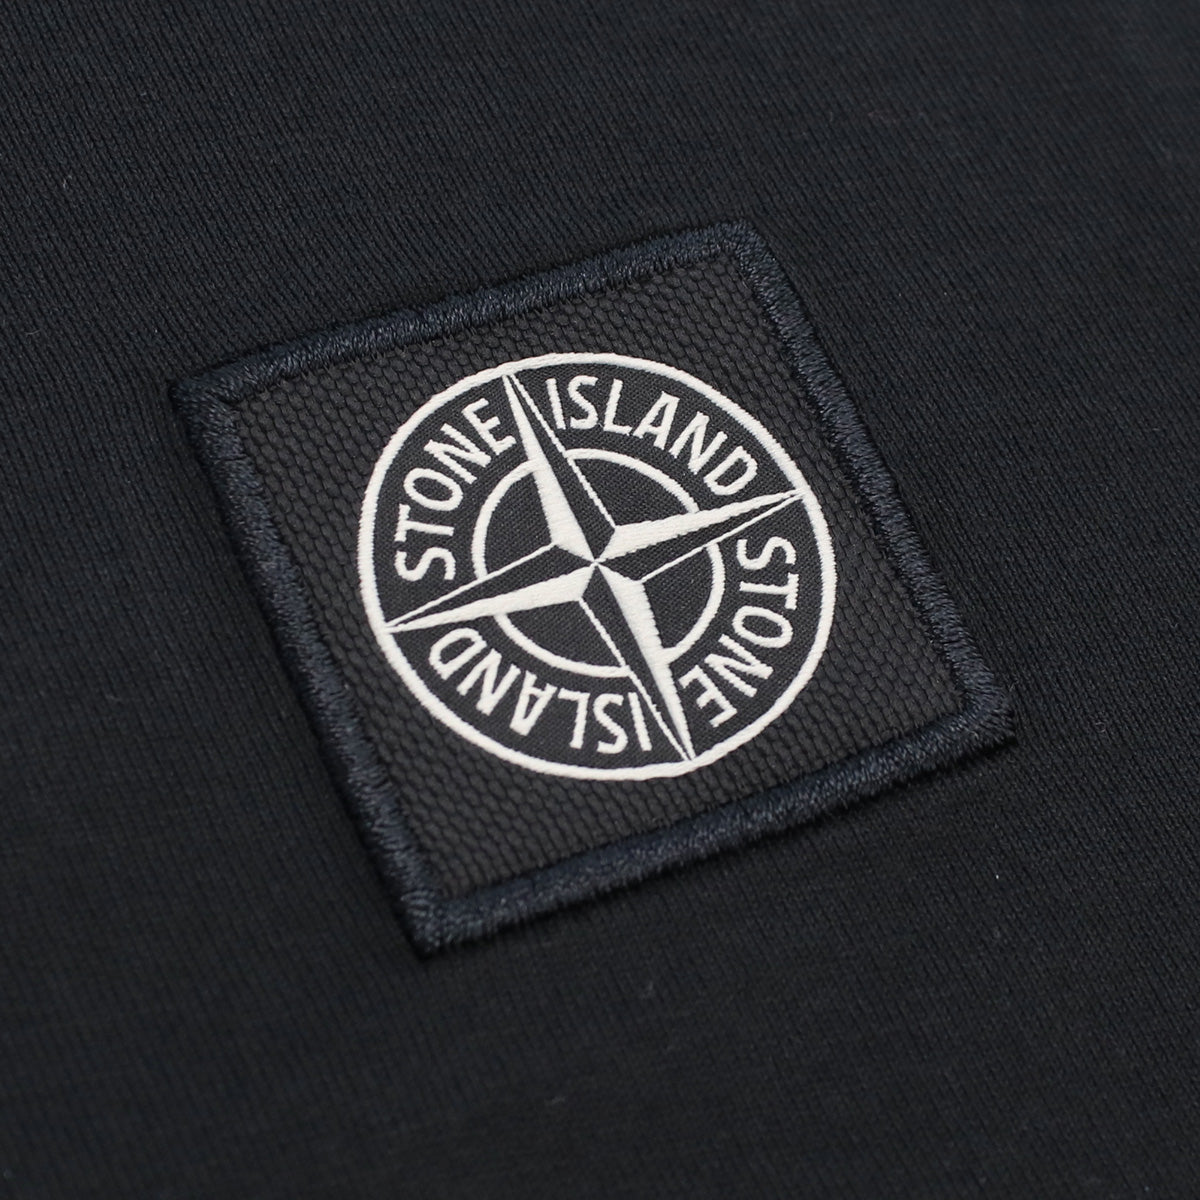 STONE ISLAND ストーンアイランド 101524113 Tシャツ ブラック メンズ